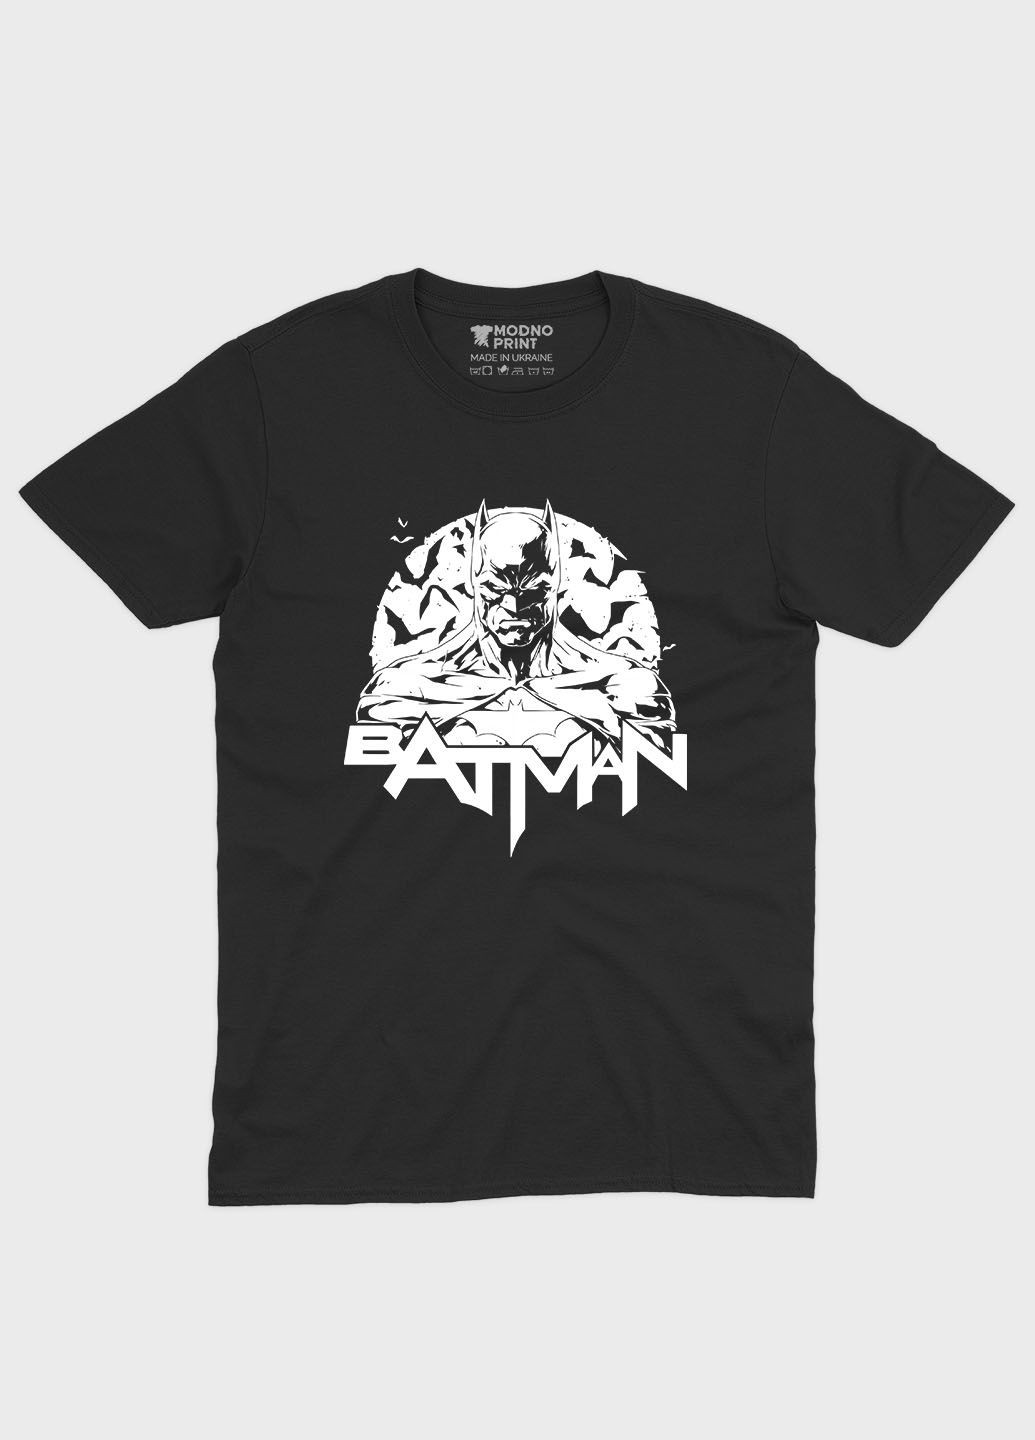 Черная летняя мужская футболка с принтом супергероя - бэтмен (ts001-1-bl-006-003-012-f) Modno